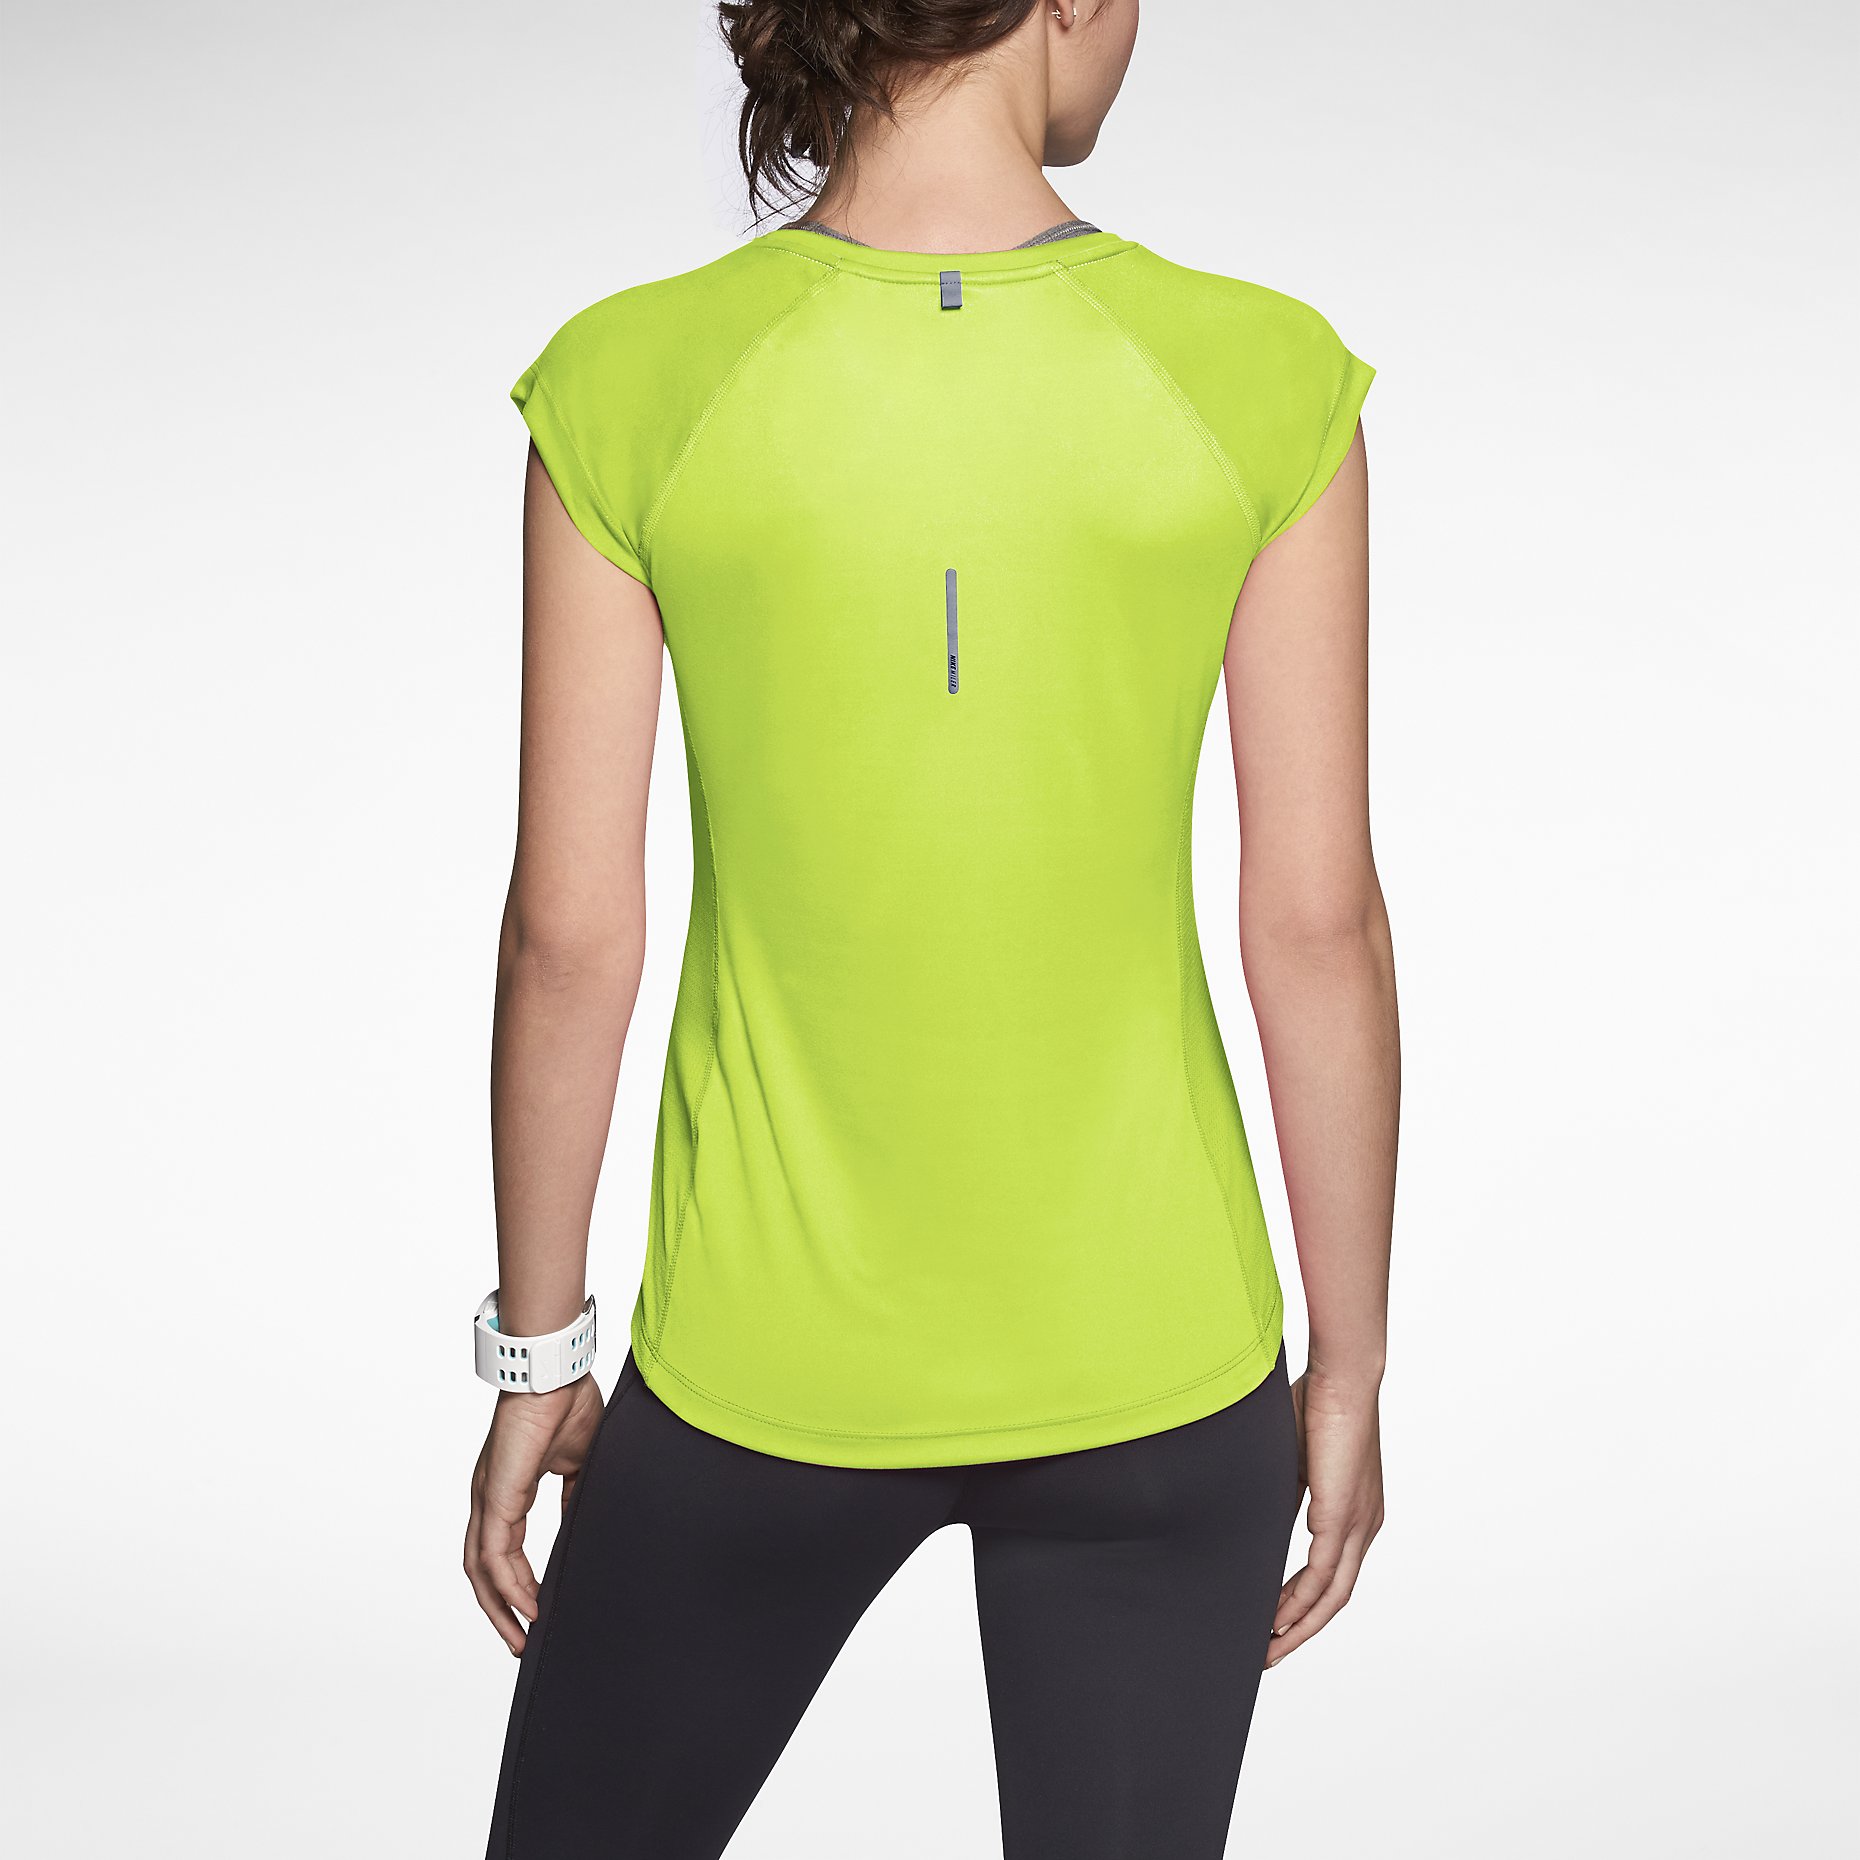 Nike-Miler-V-Neck-Womens-Running-Shirt-519831_702_B_PREM.jpg